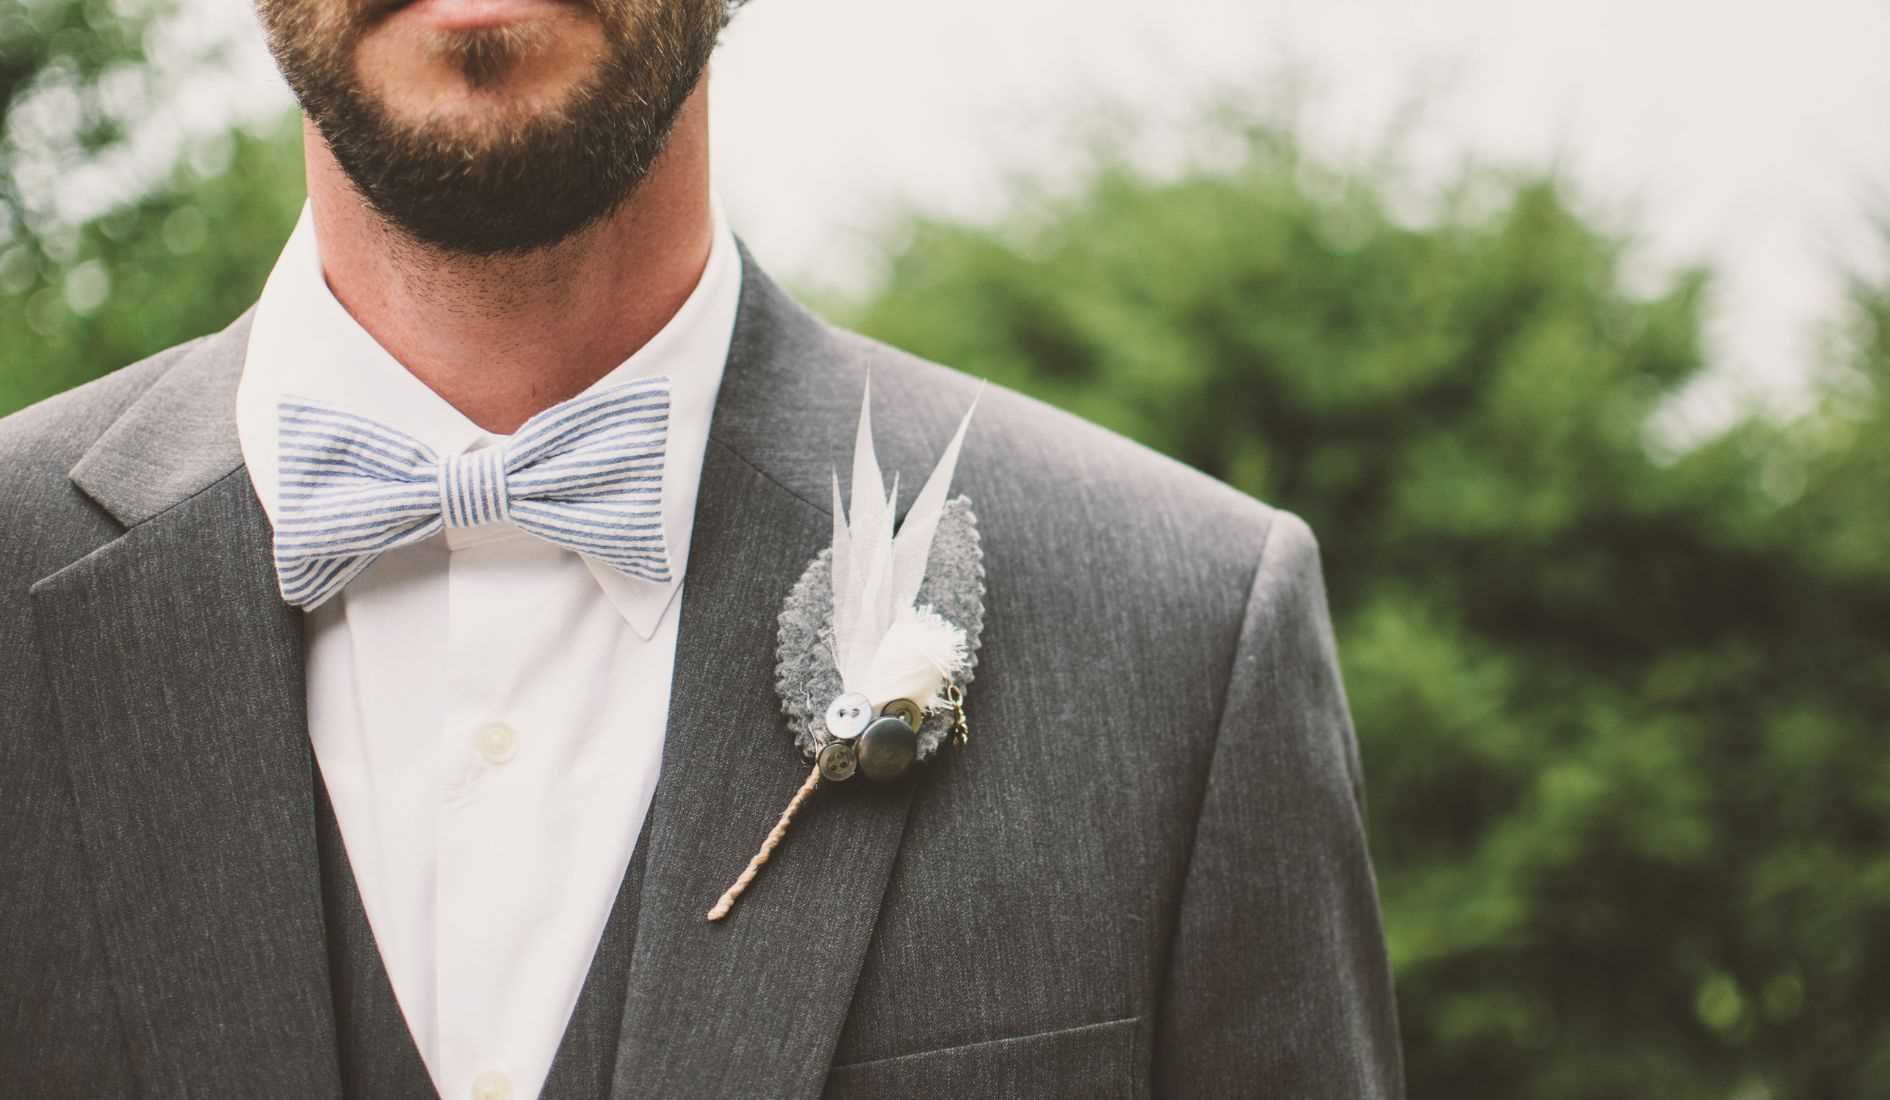 Padrino de boda, ¿cuál es el traje ideal?￼